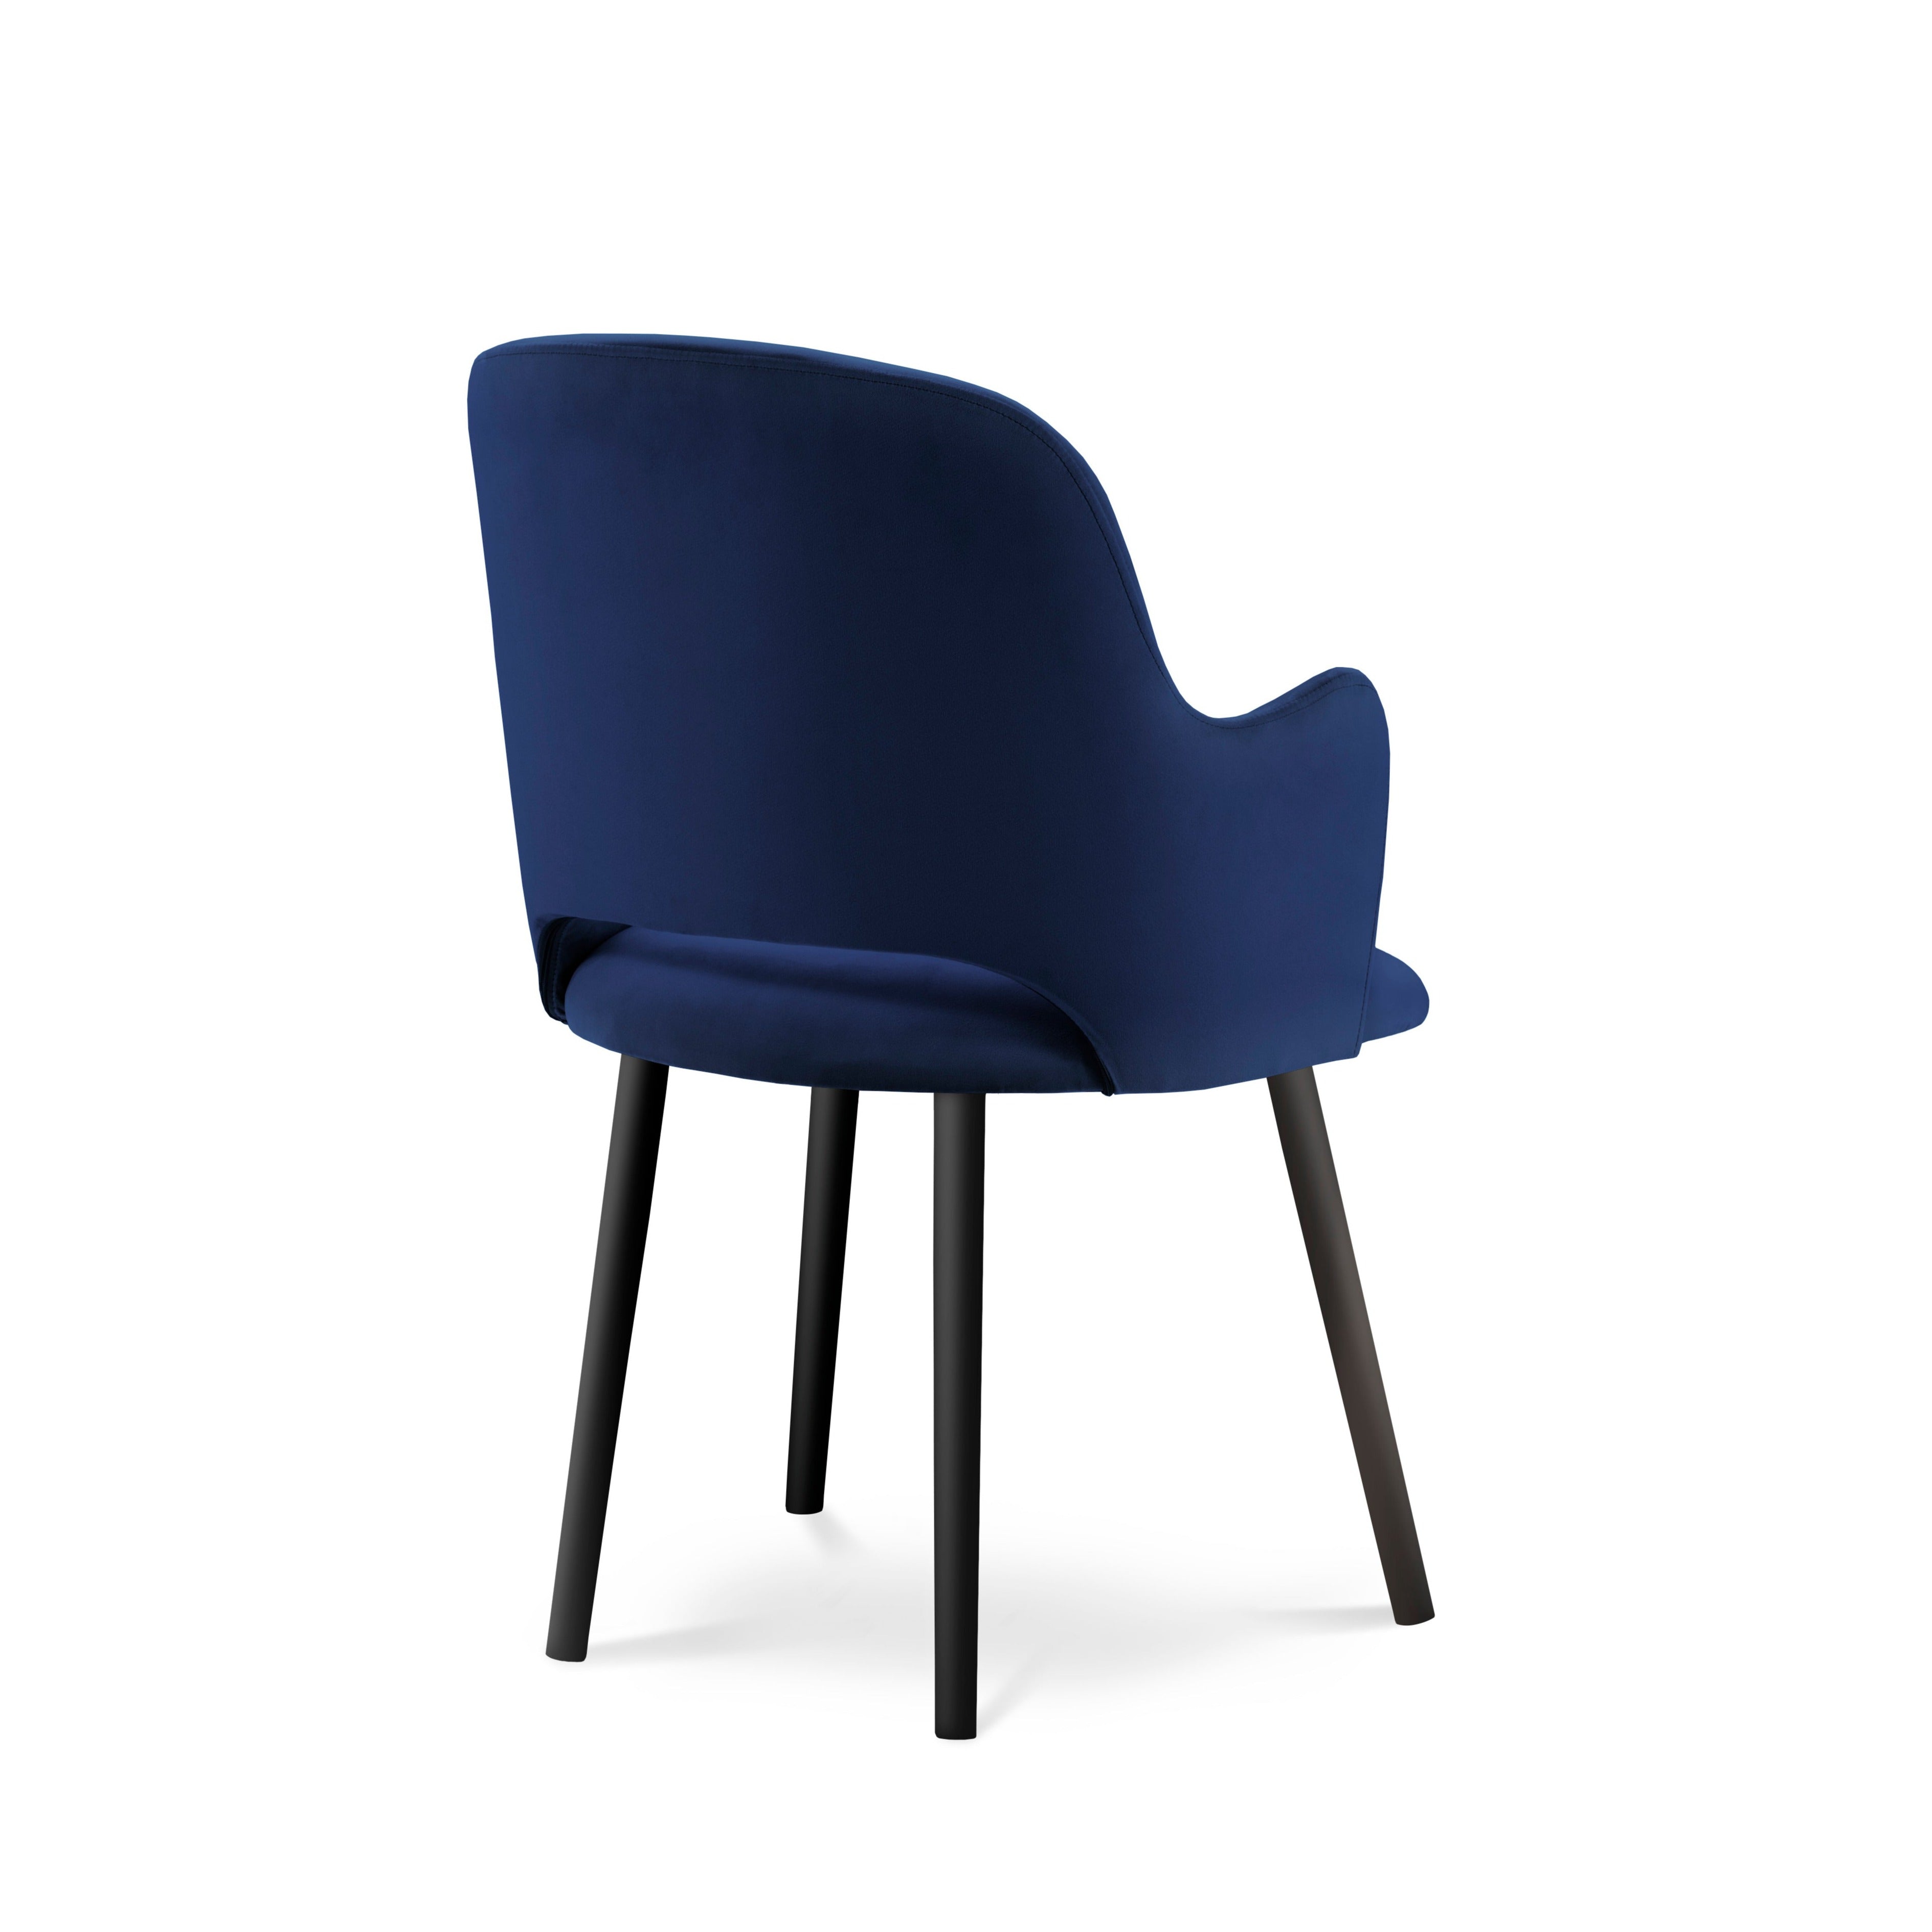 Velvet navy blue chair